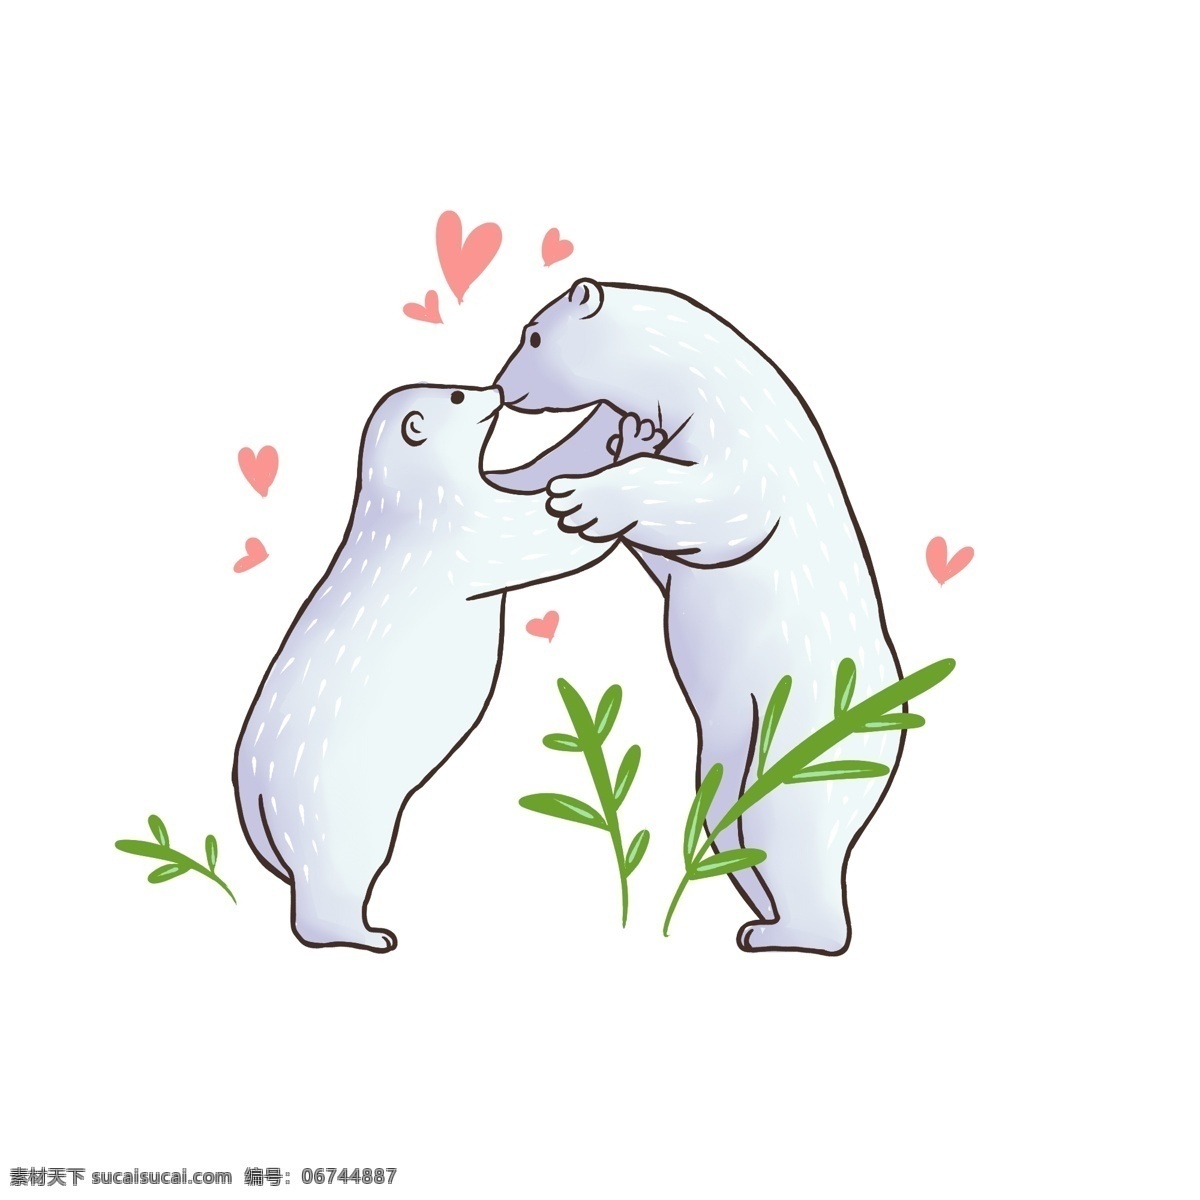 国际 接吻 日 北极熊 元素 动物 可爱 卡通 国际接吻日 亲吻 亲亲